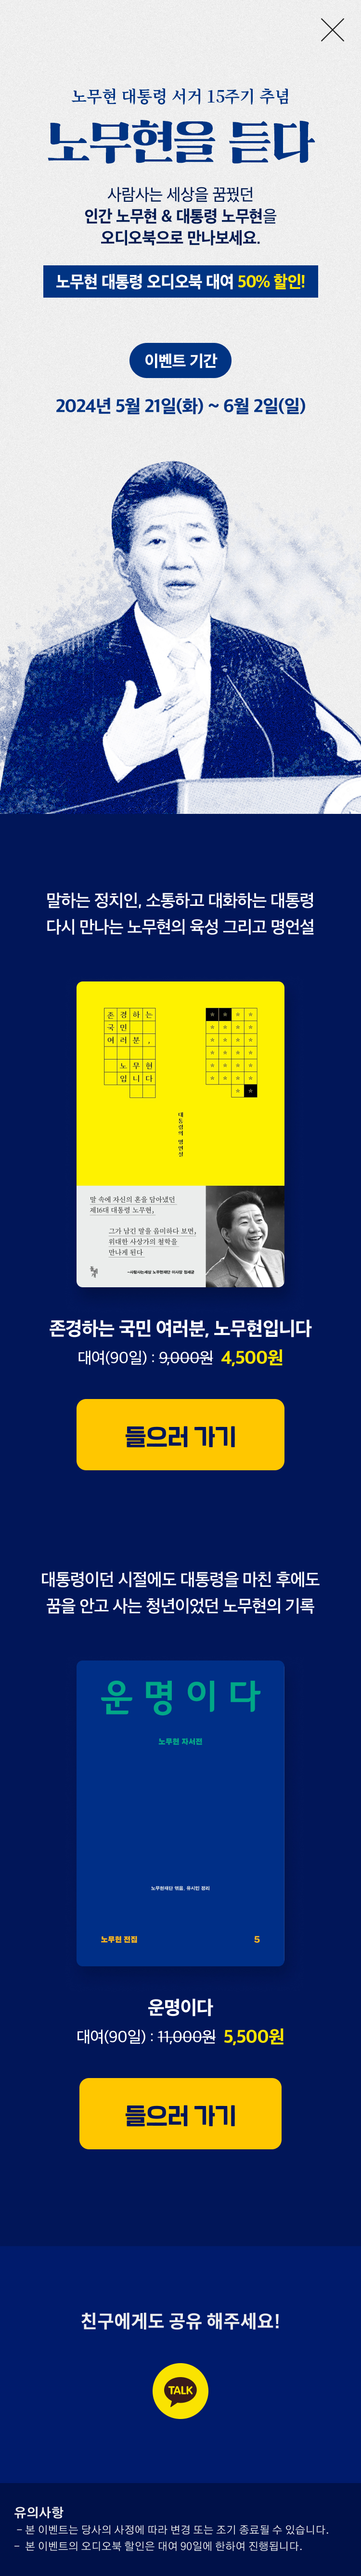 노무현 대통령 서거 15주기 오디오북 할인 이벤트